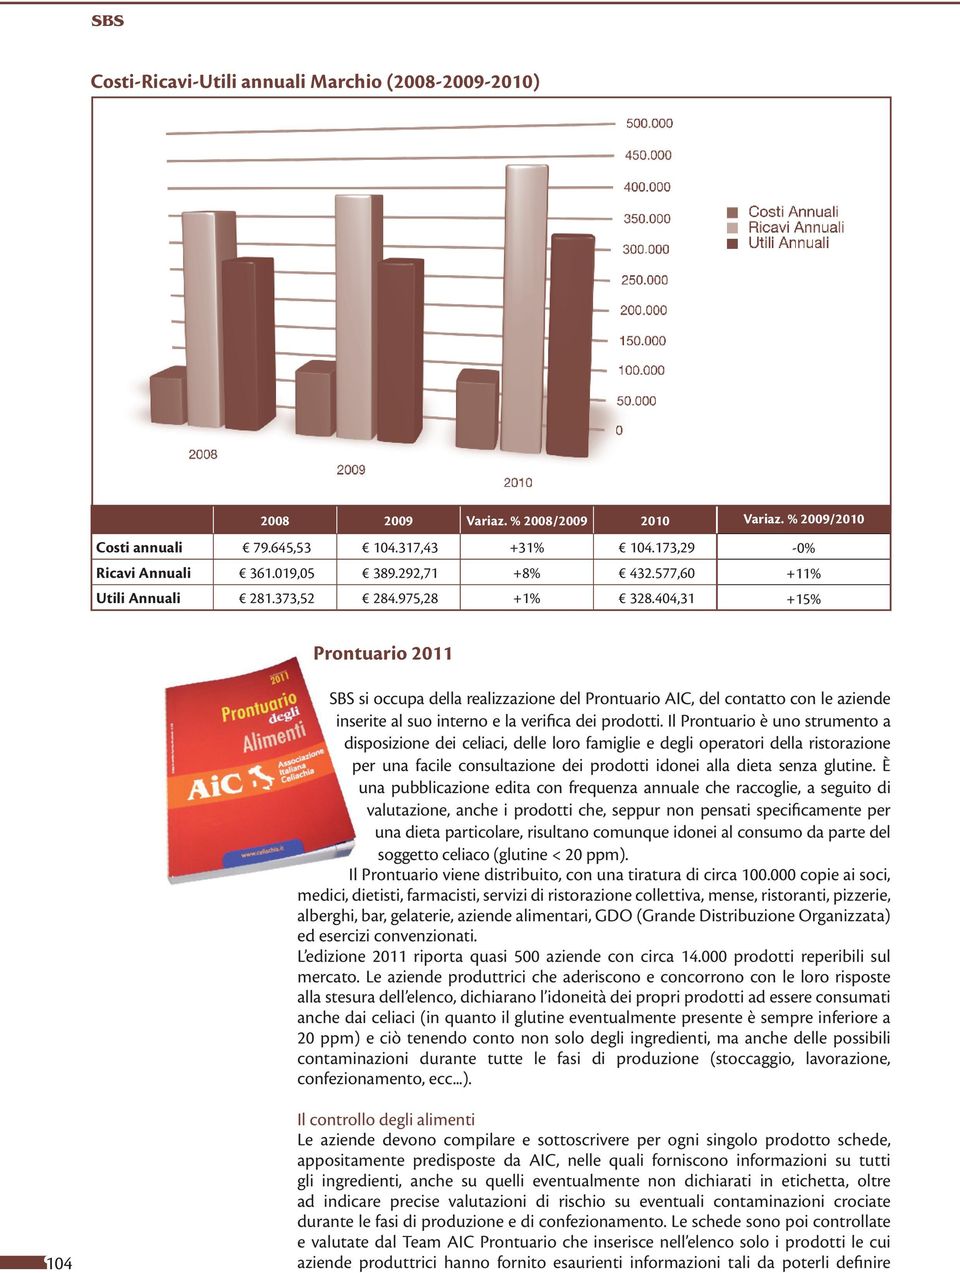 404,31 +15% 2011 SBS si occupa della realizzazione del AIC, del contatto con le aziende inserite al suo interno e la verifica dei prodotti.